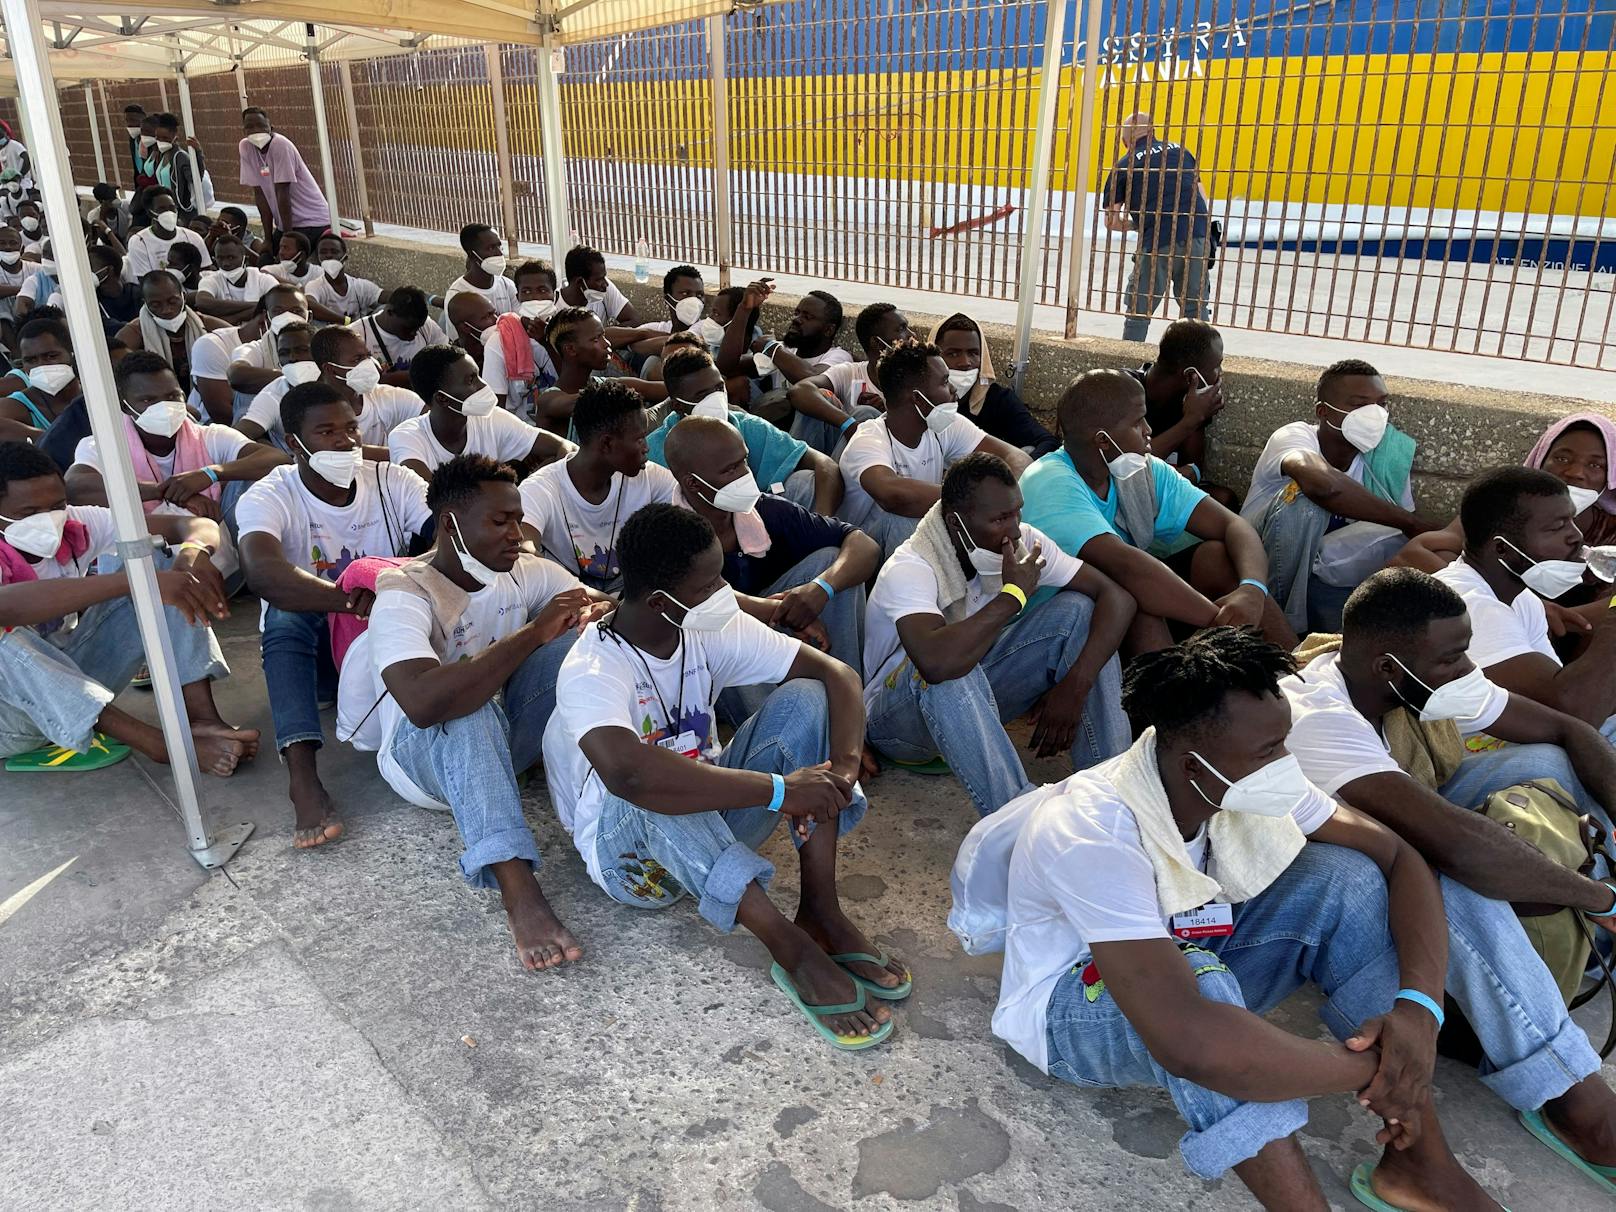 Aufgrund der steigenden Zahl an ankommenden Migranten hat die italienische Insel Lampedusa den Notstand ausgerufen.